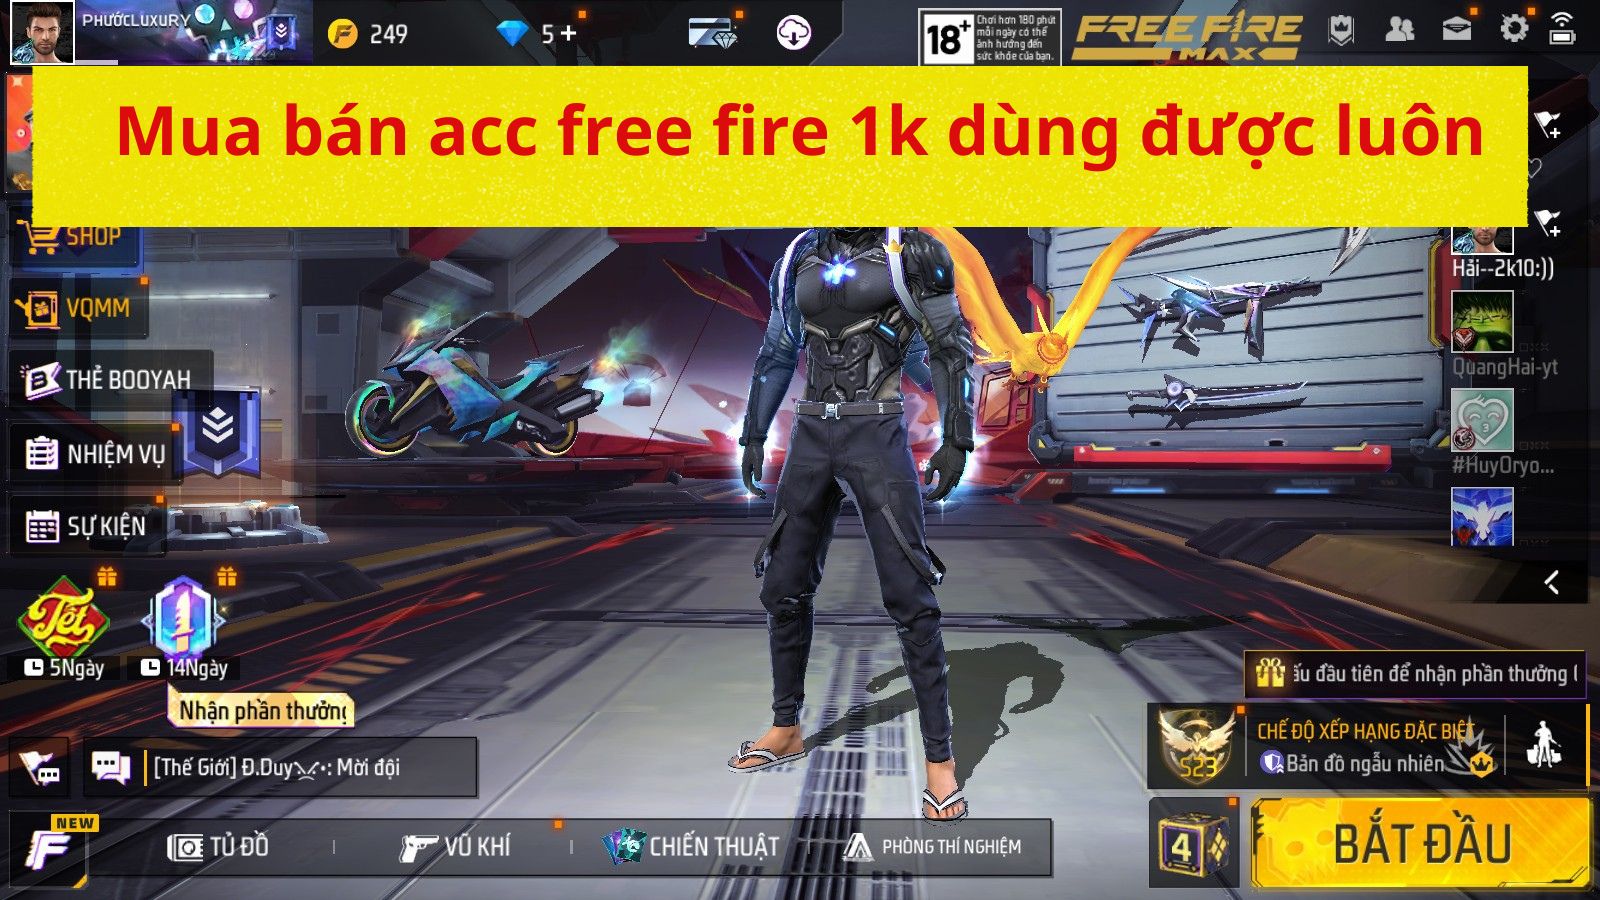 Mua bán acc free fire 1k dùng được luôn tại Shopacc.vn